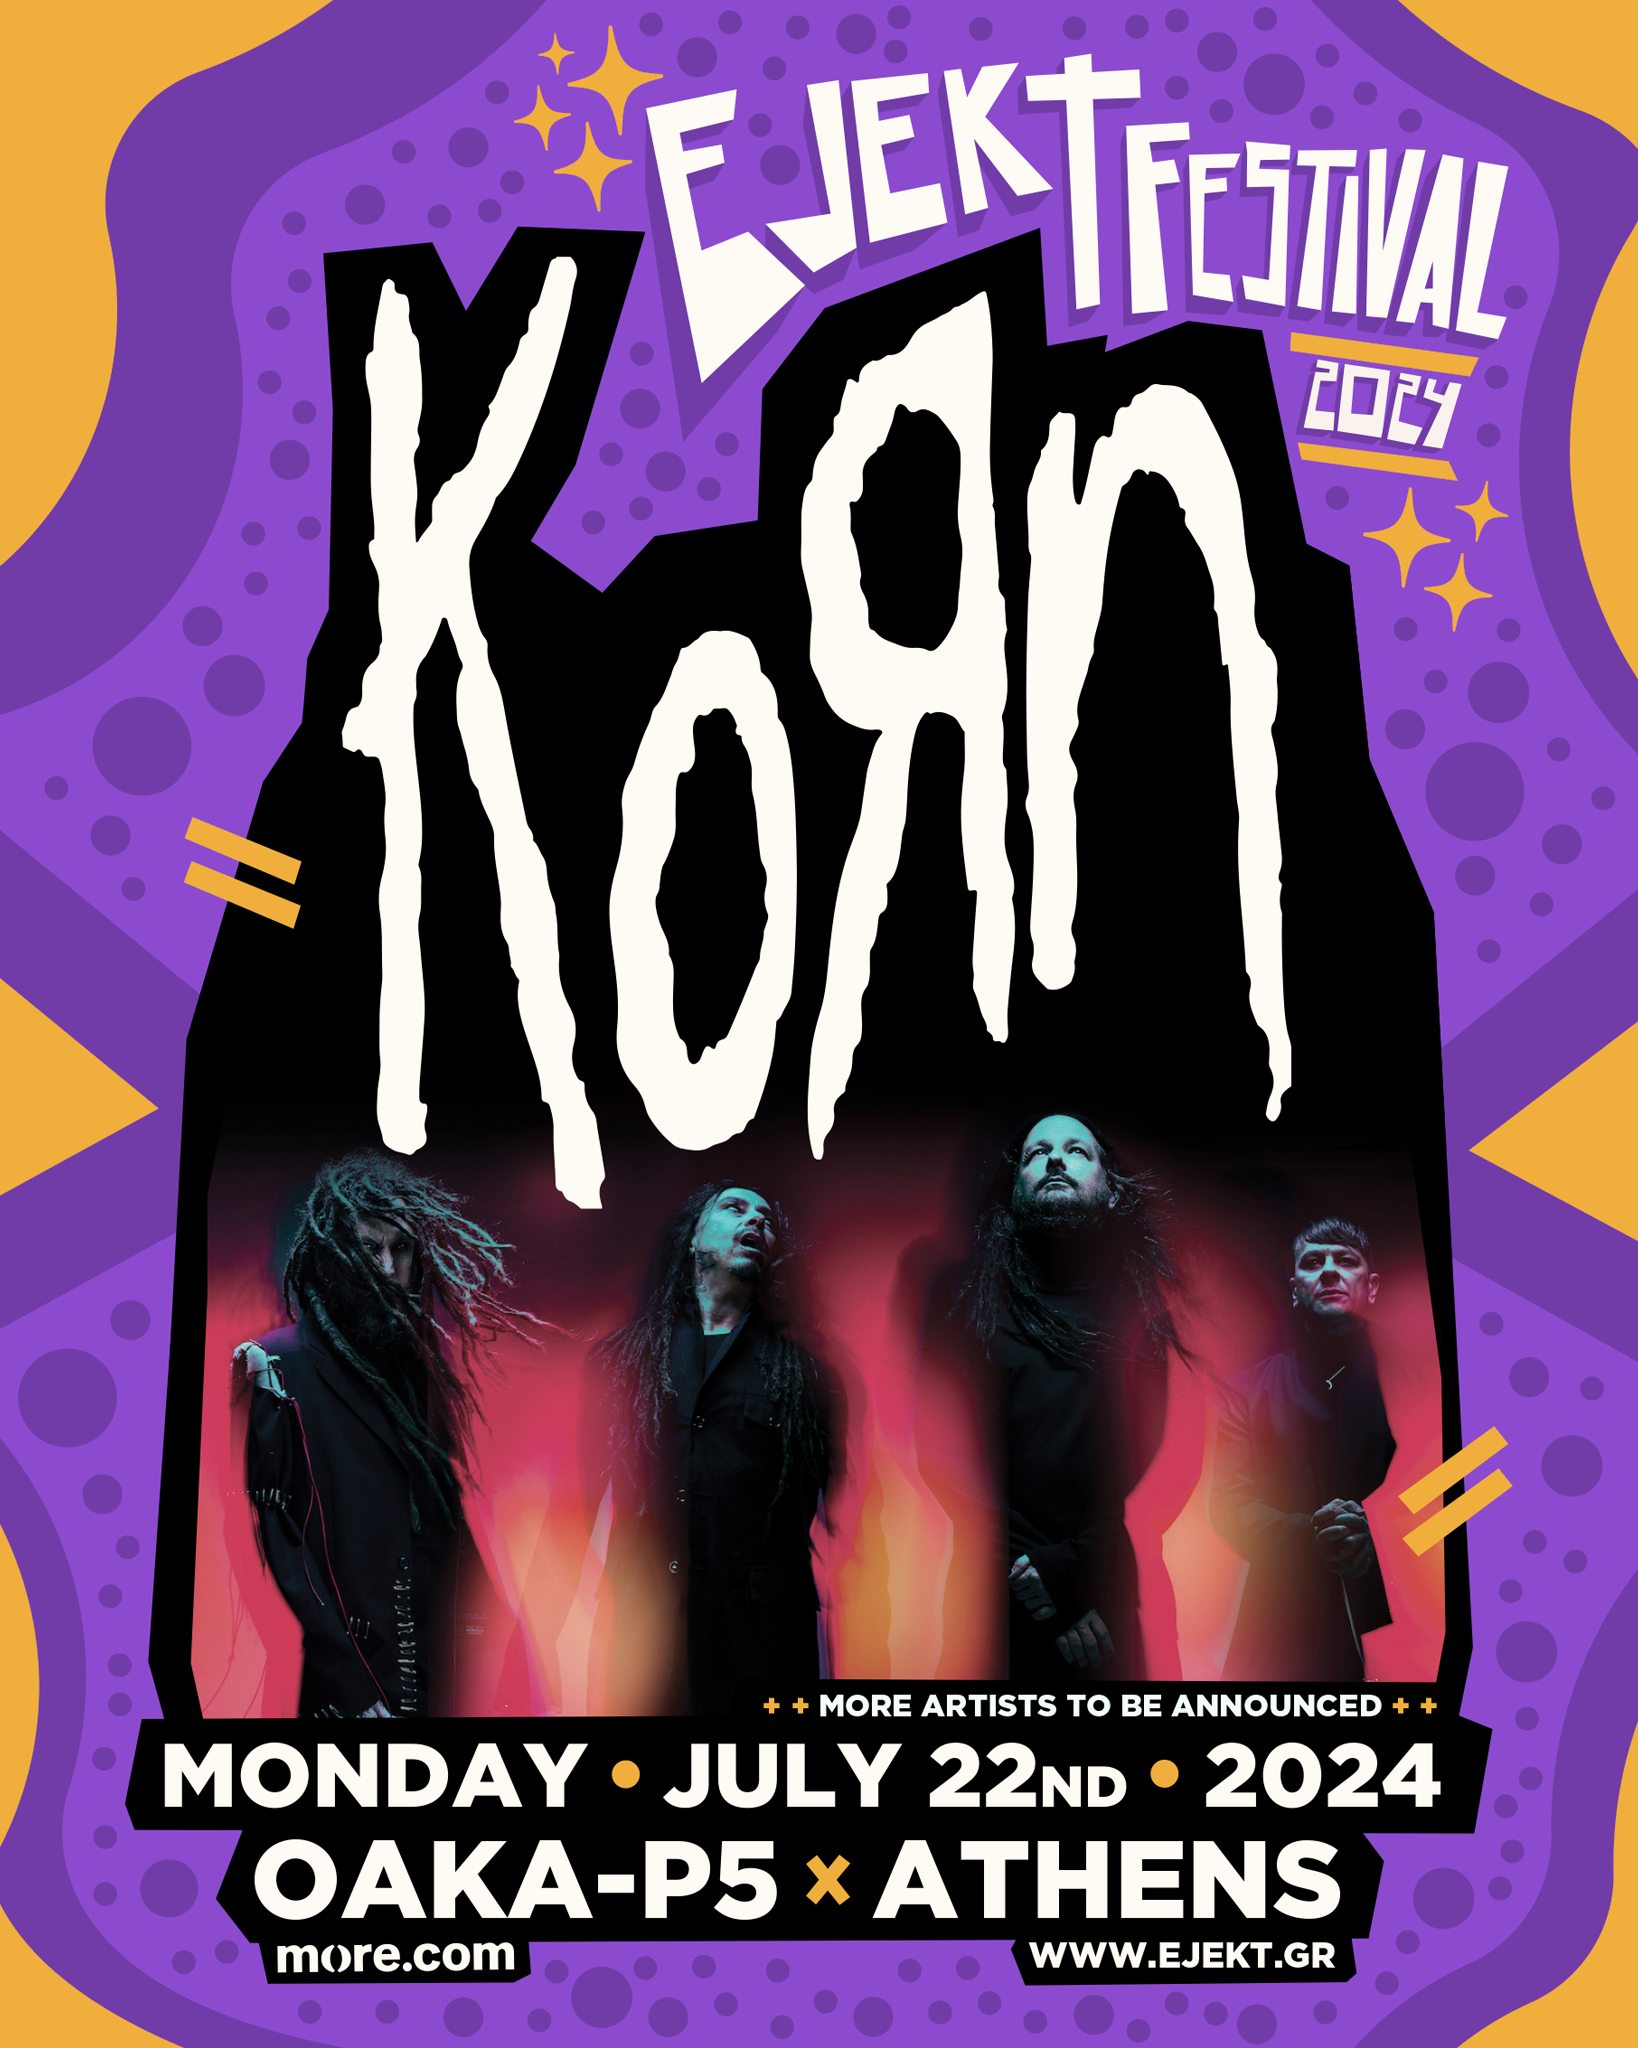 Korn Ejekt Festival 2024